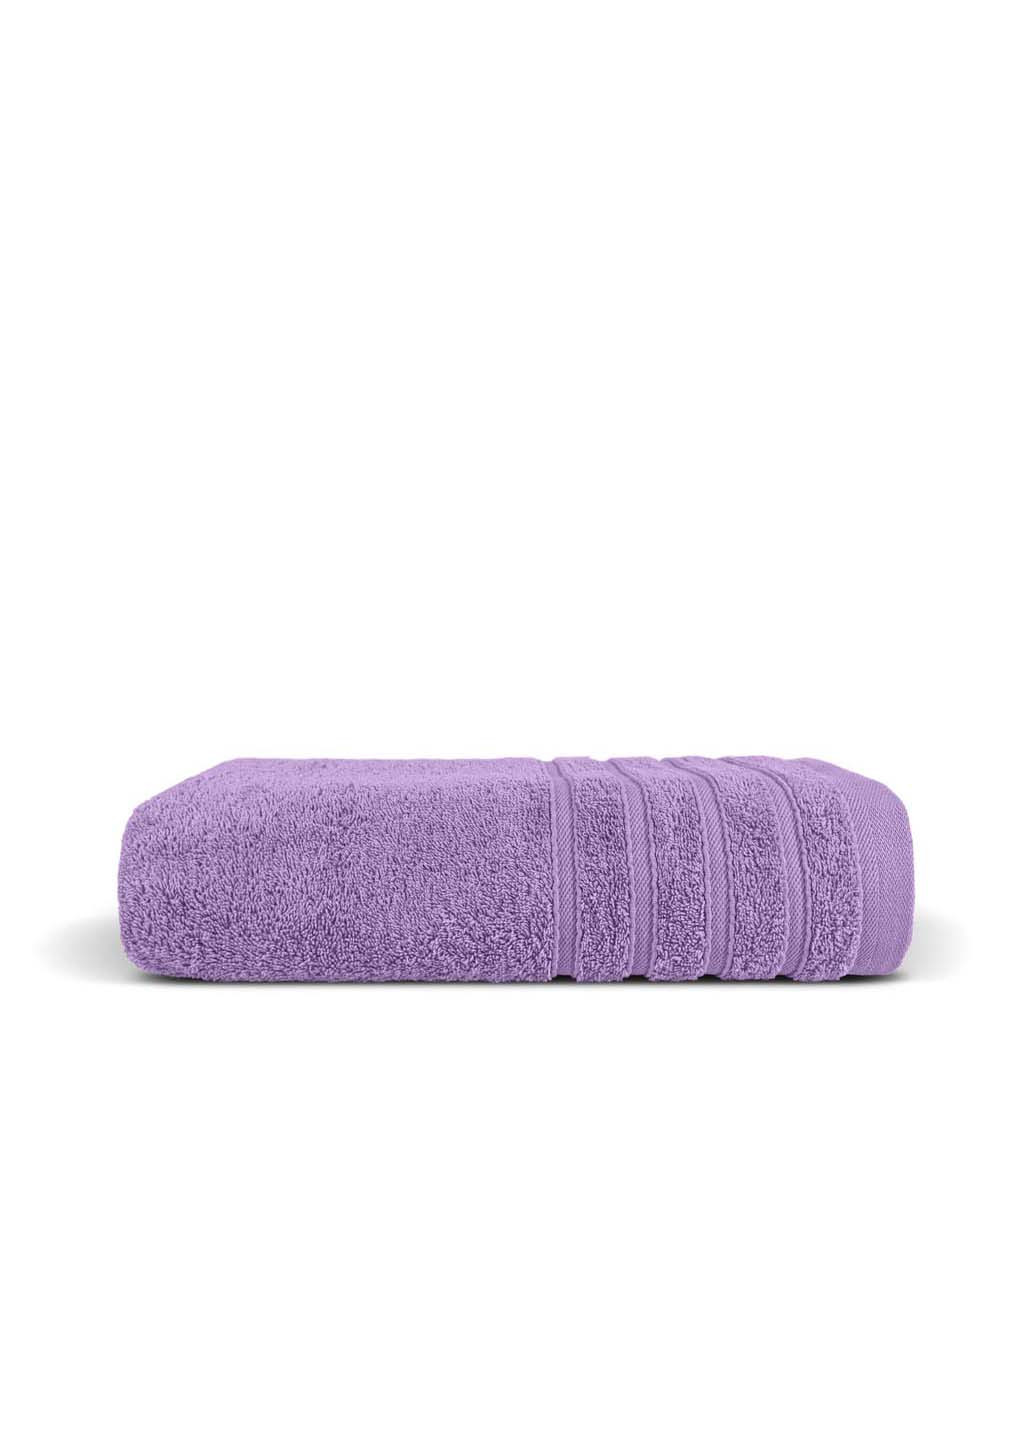 Cosas полотенце махровое 40х70 см фиолетовый производство -